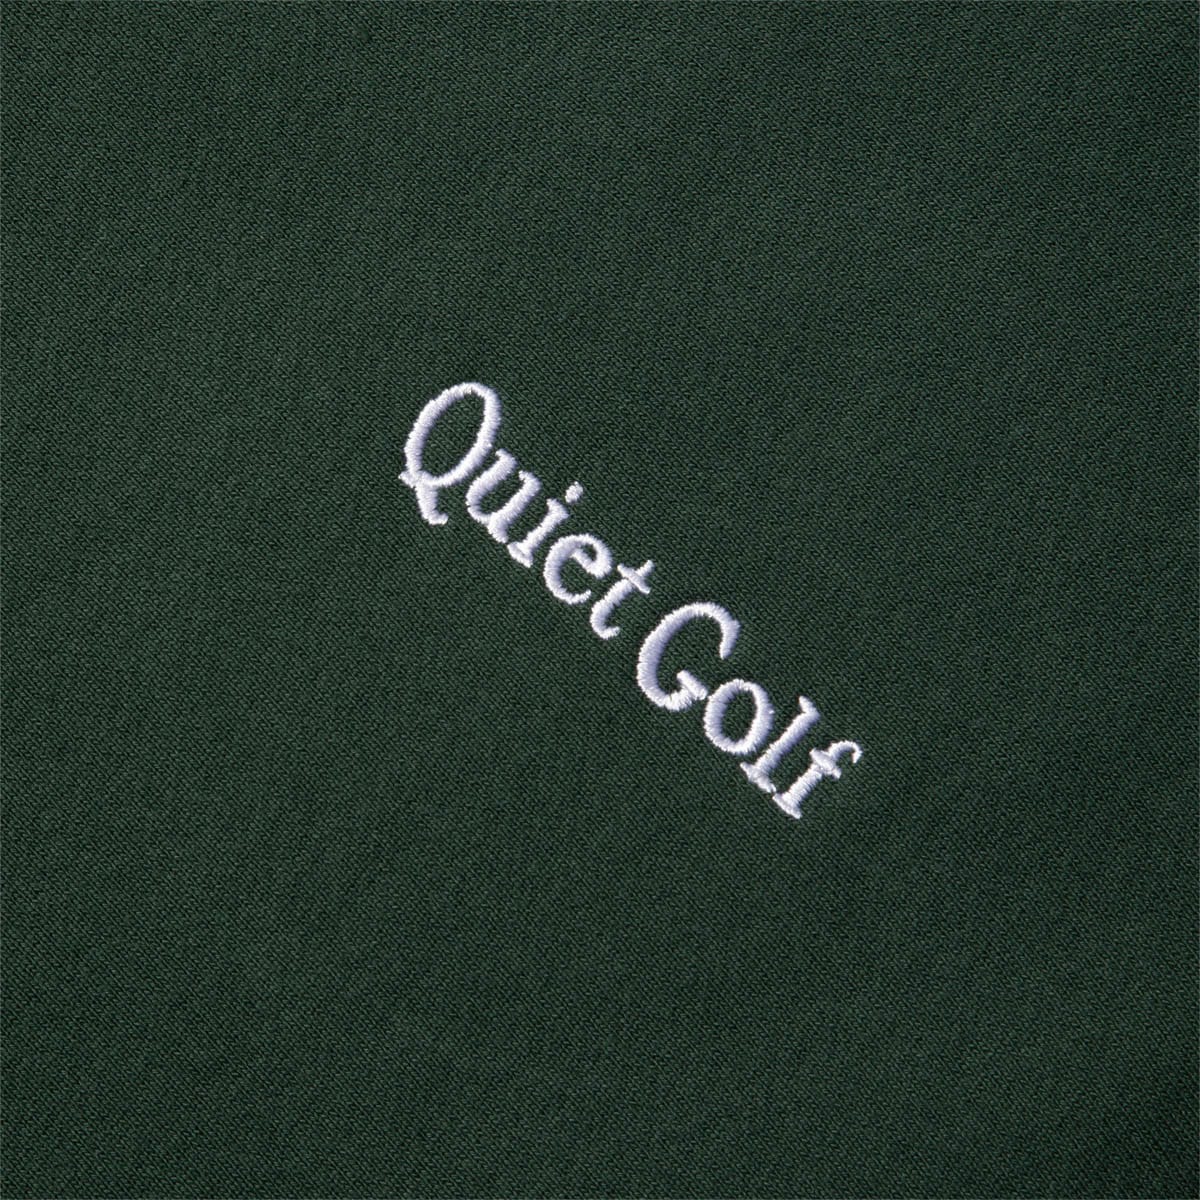 Quiet Golf Hoodies & Sweatshirts TYPEFACE CREWNECK